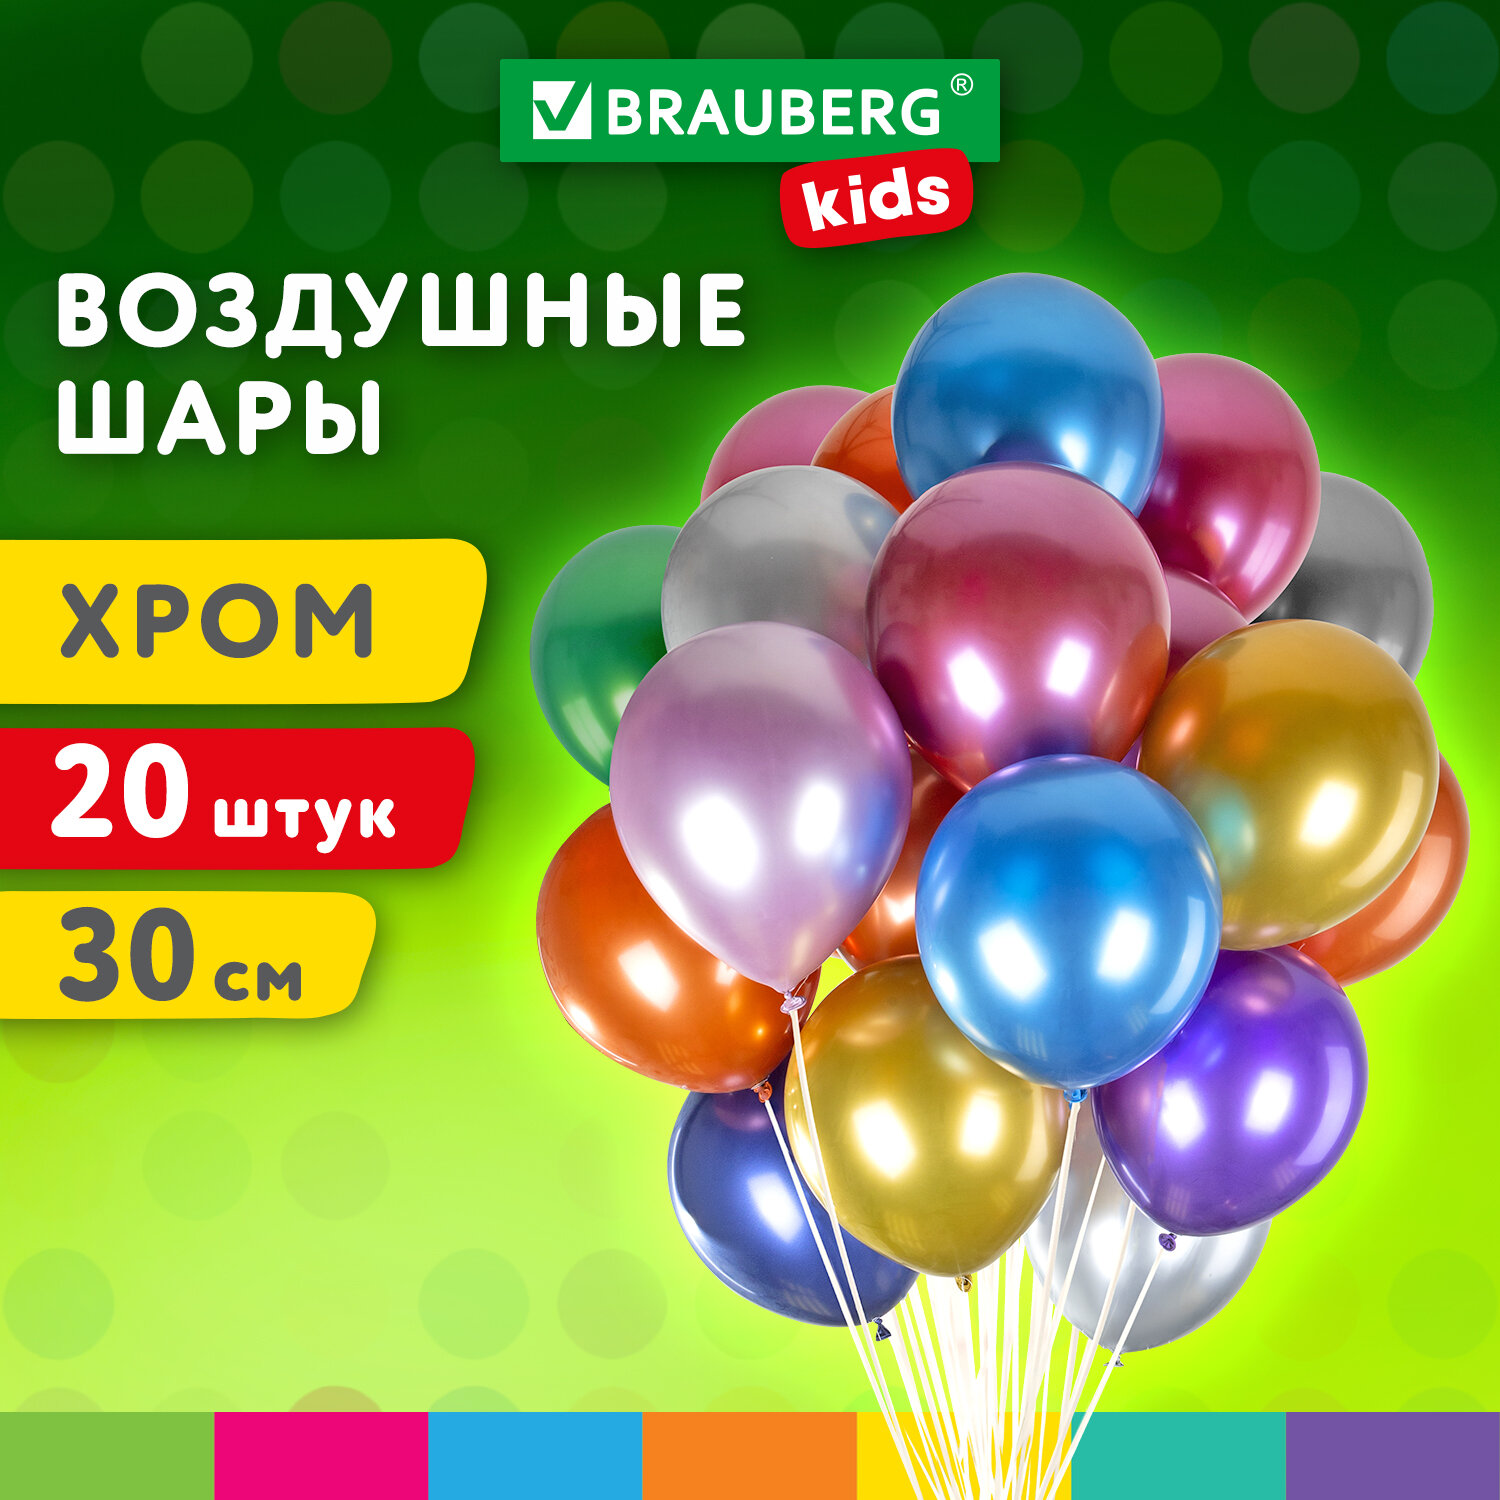 Шарики воздушные Brauberg Kids 591887 набор на день рождения, для фотозоны, 30 см, 20 штук набор воздушных шаров для оформления фотозоны